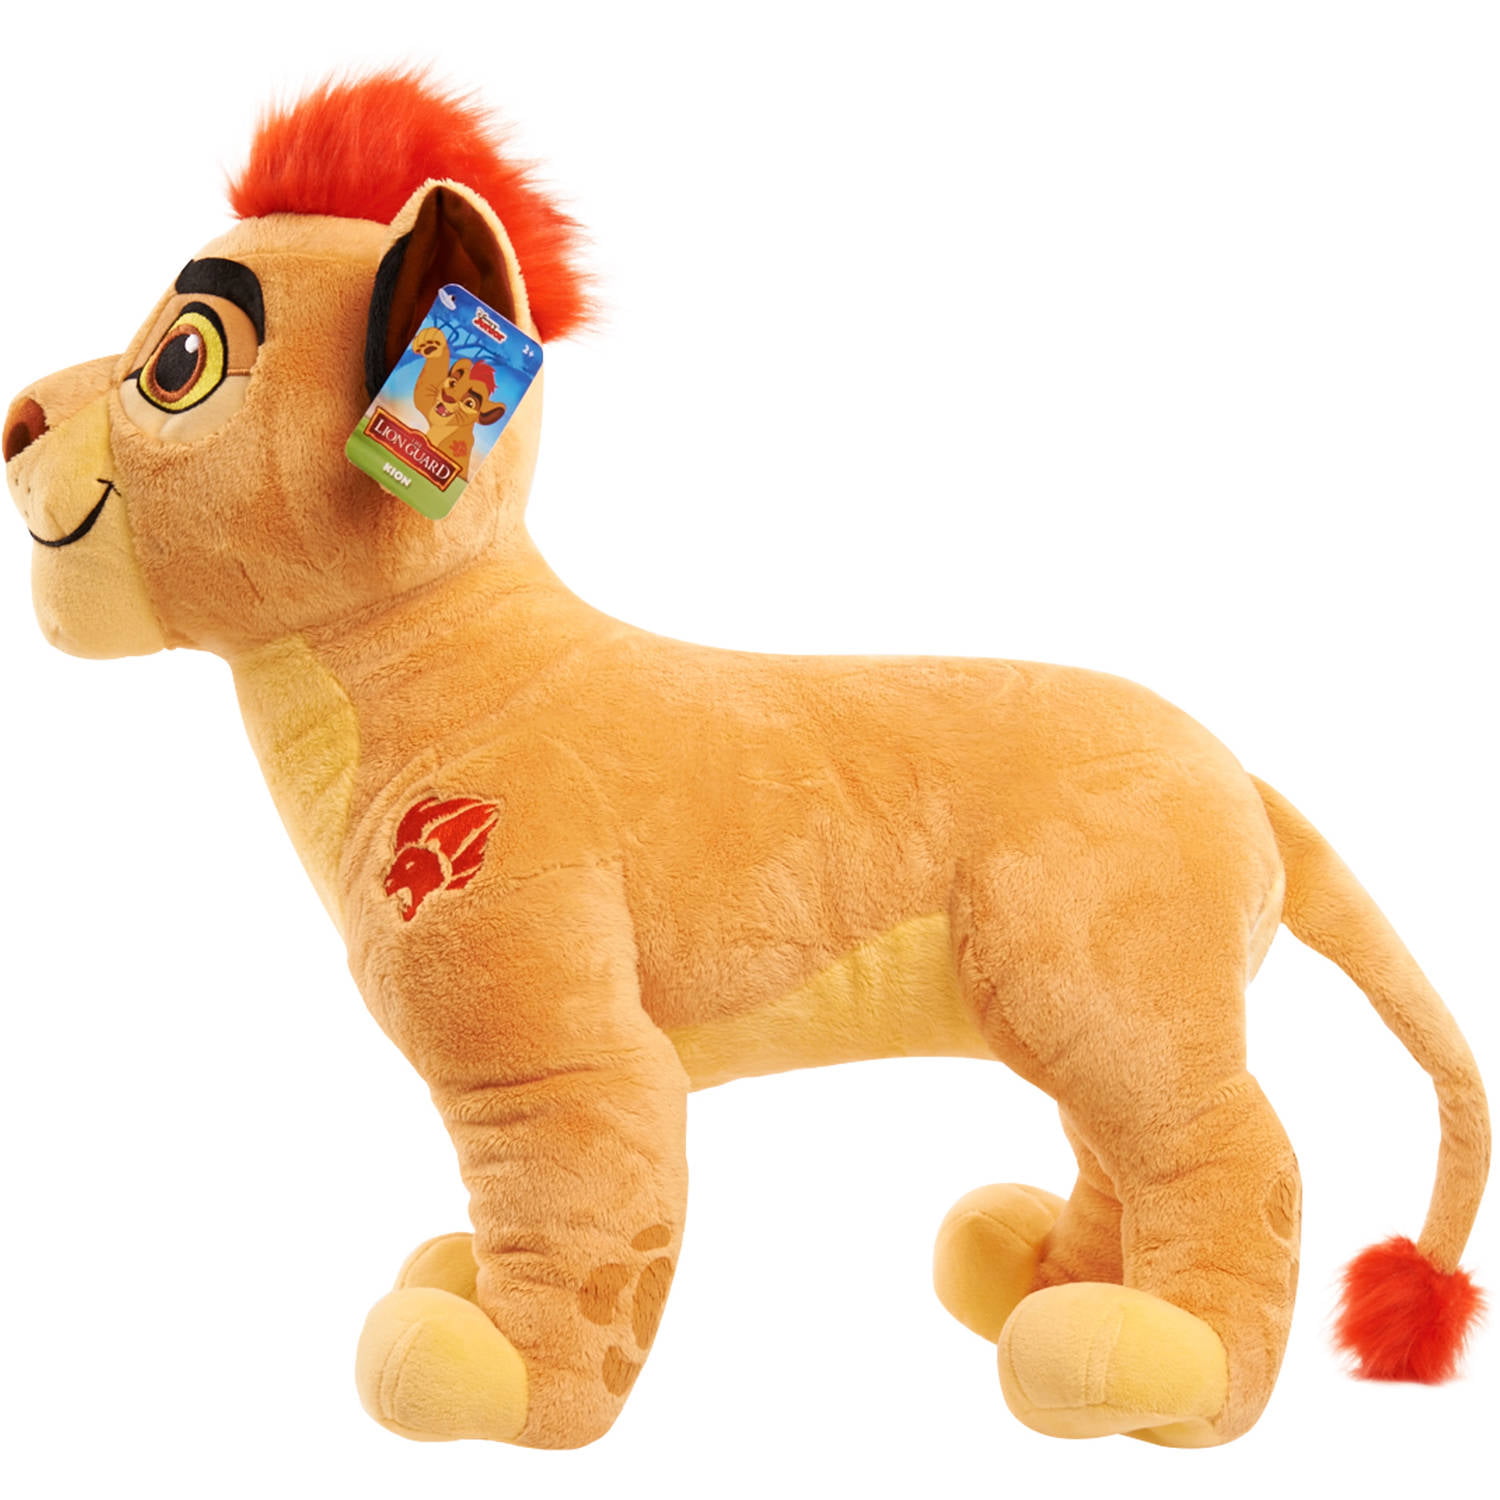 kion lion king toy